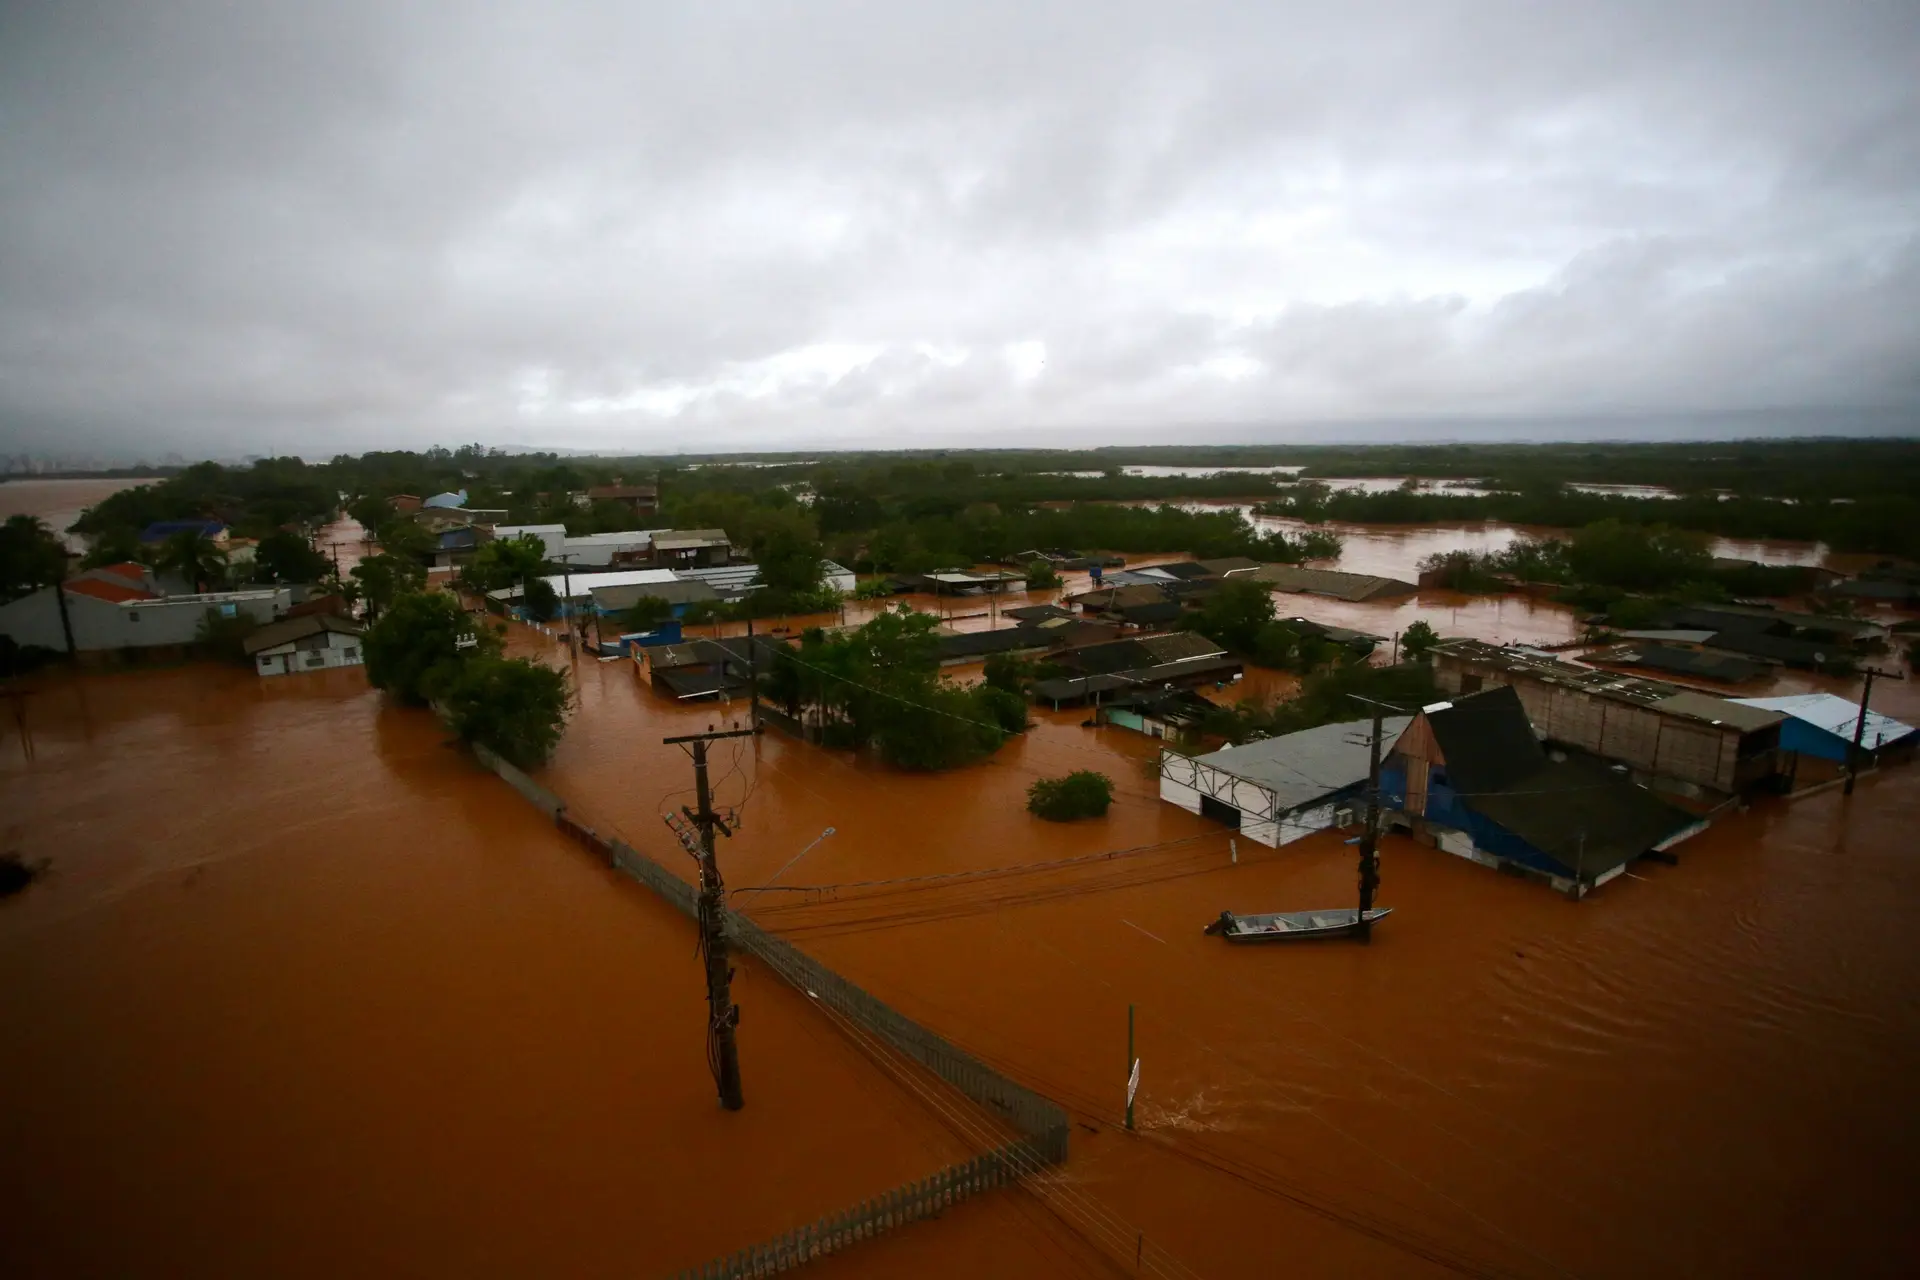 Cheias no Brasil: destruição, desespero e muitos pedidos de ajuda